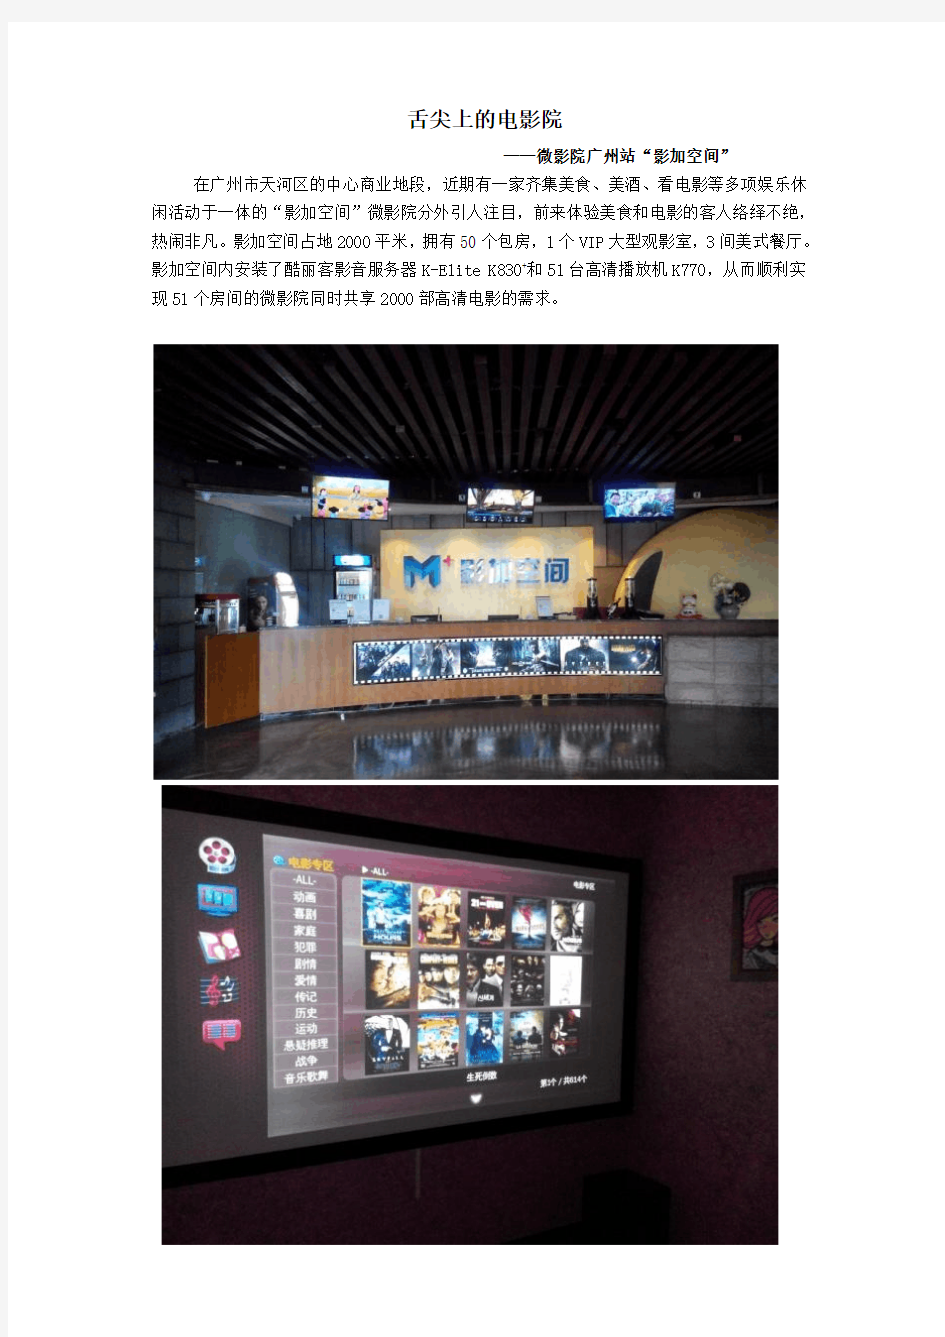 舌尖上的电影院  微影院广州站“影加空间”